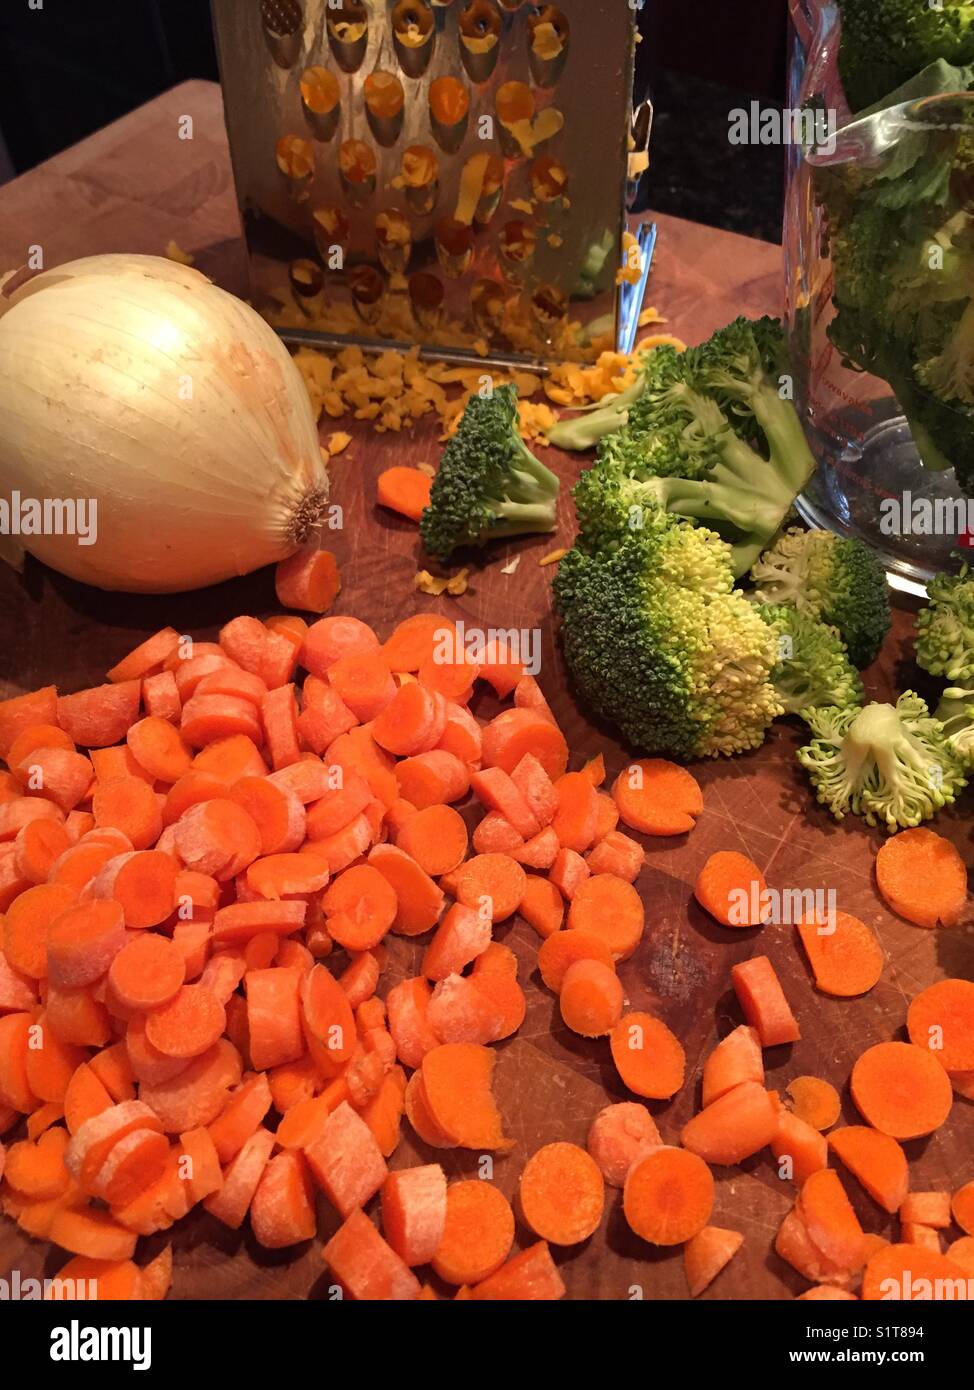 Ortaggi freschi compresi green broccoli, carote arancione e giallo cipolla con formaggio Cheddar grattugiato sono seduti sul tagliere di legno pronti per essere cucinati. Foto Stock